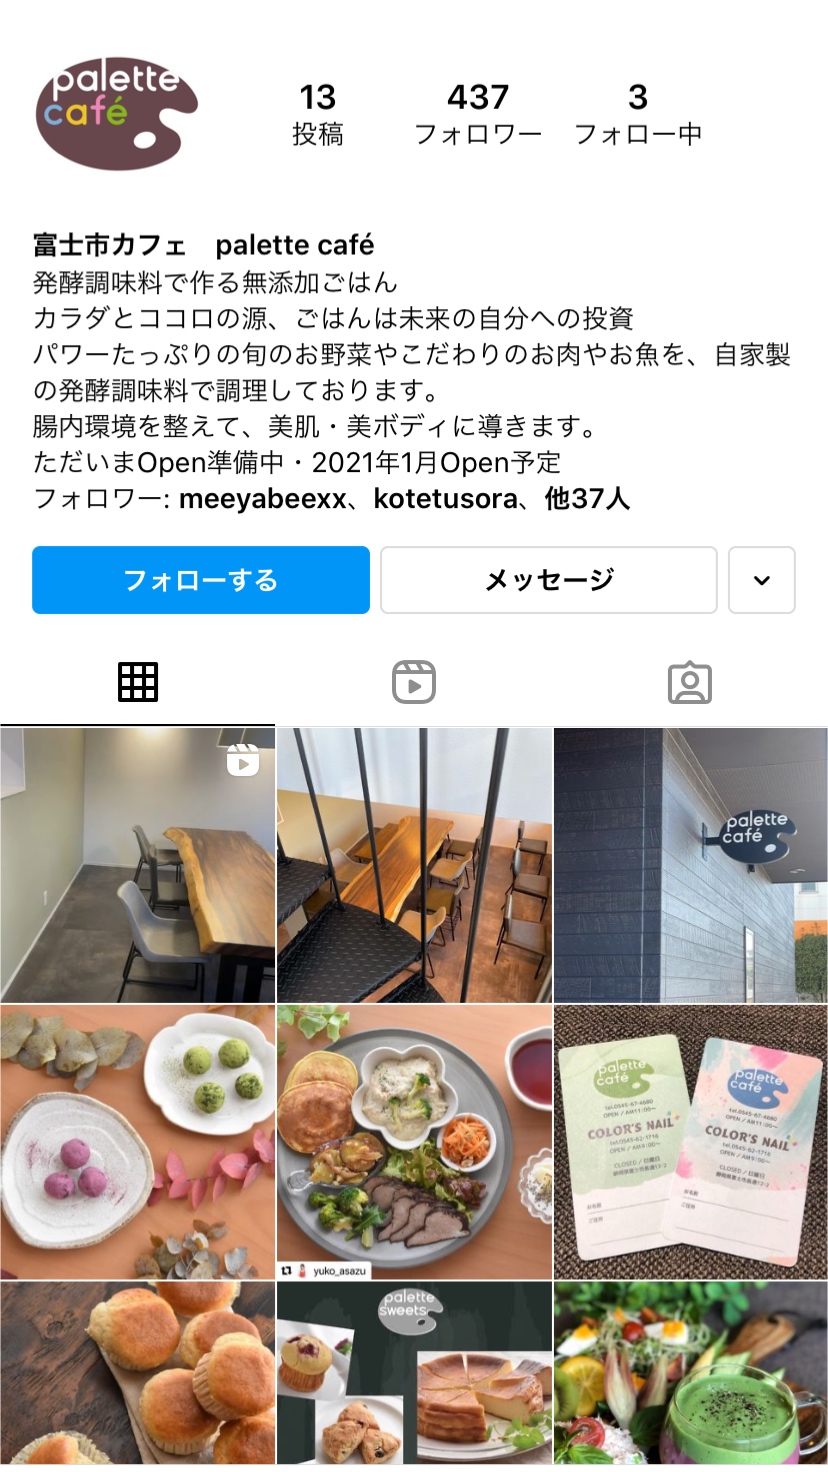 ★1月8日Palette Cafe OPEN★